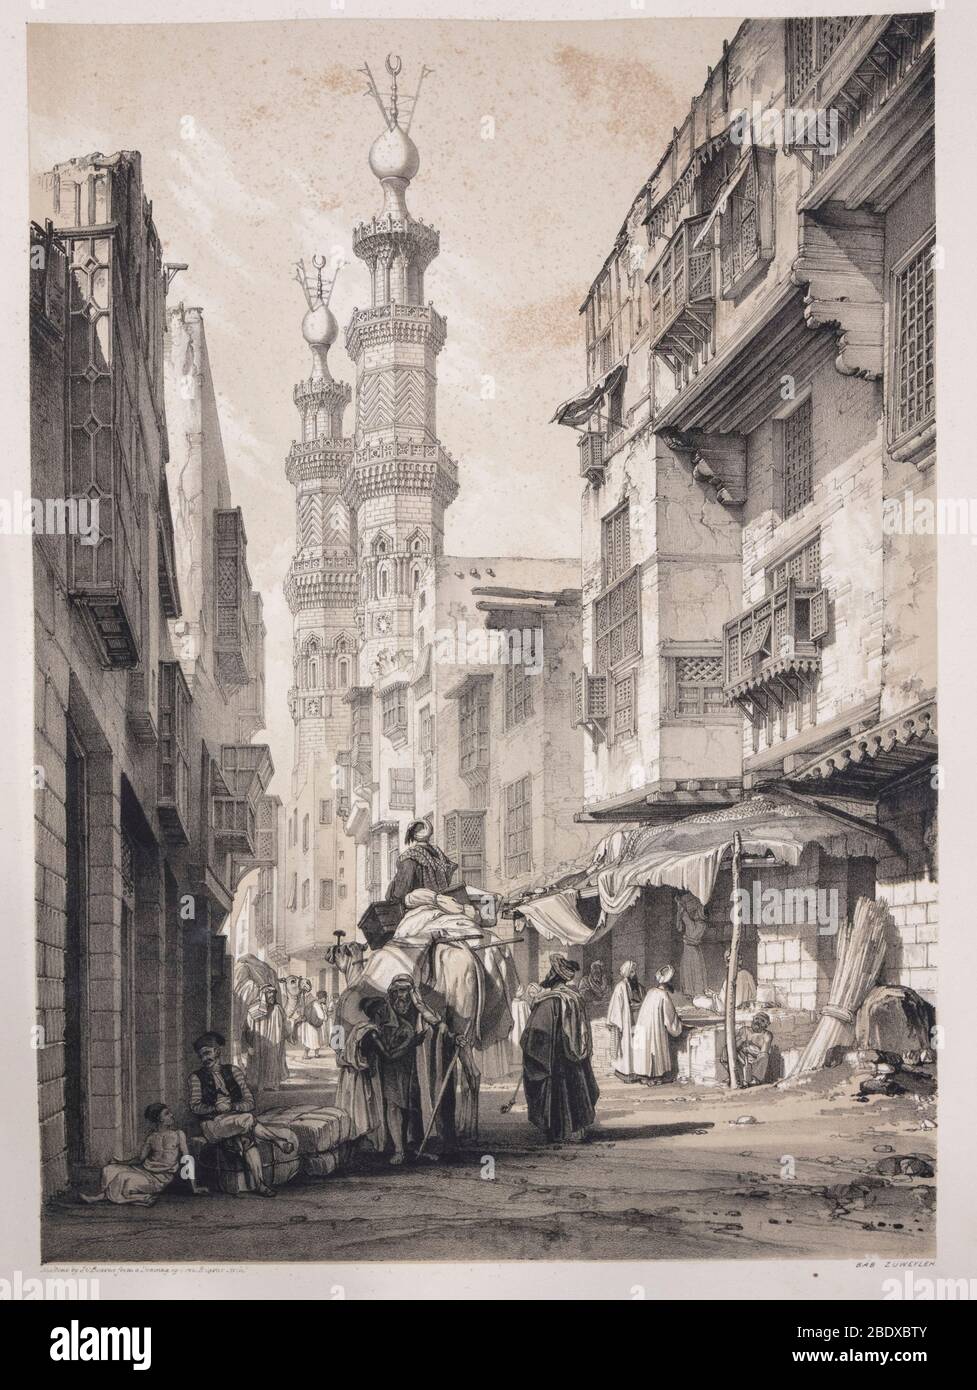 Minarette der Moschee von al-Mu'ayyad in Bab Zuwaila, Robert Hay, Illustrationen von Kairo, London, 1840 Stockfoto